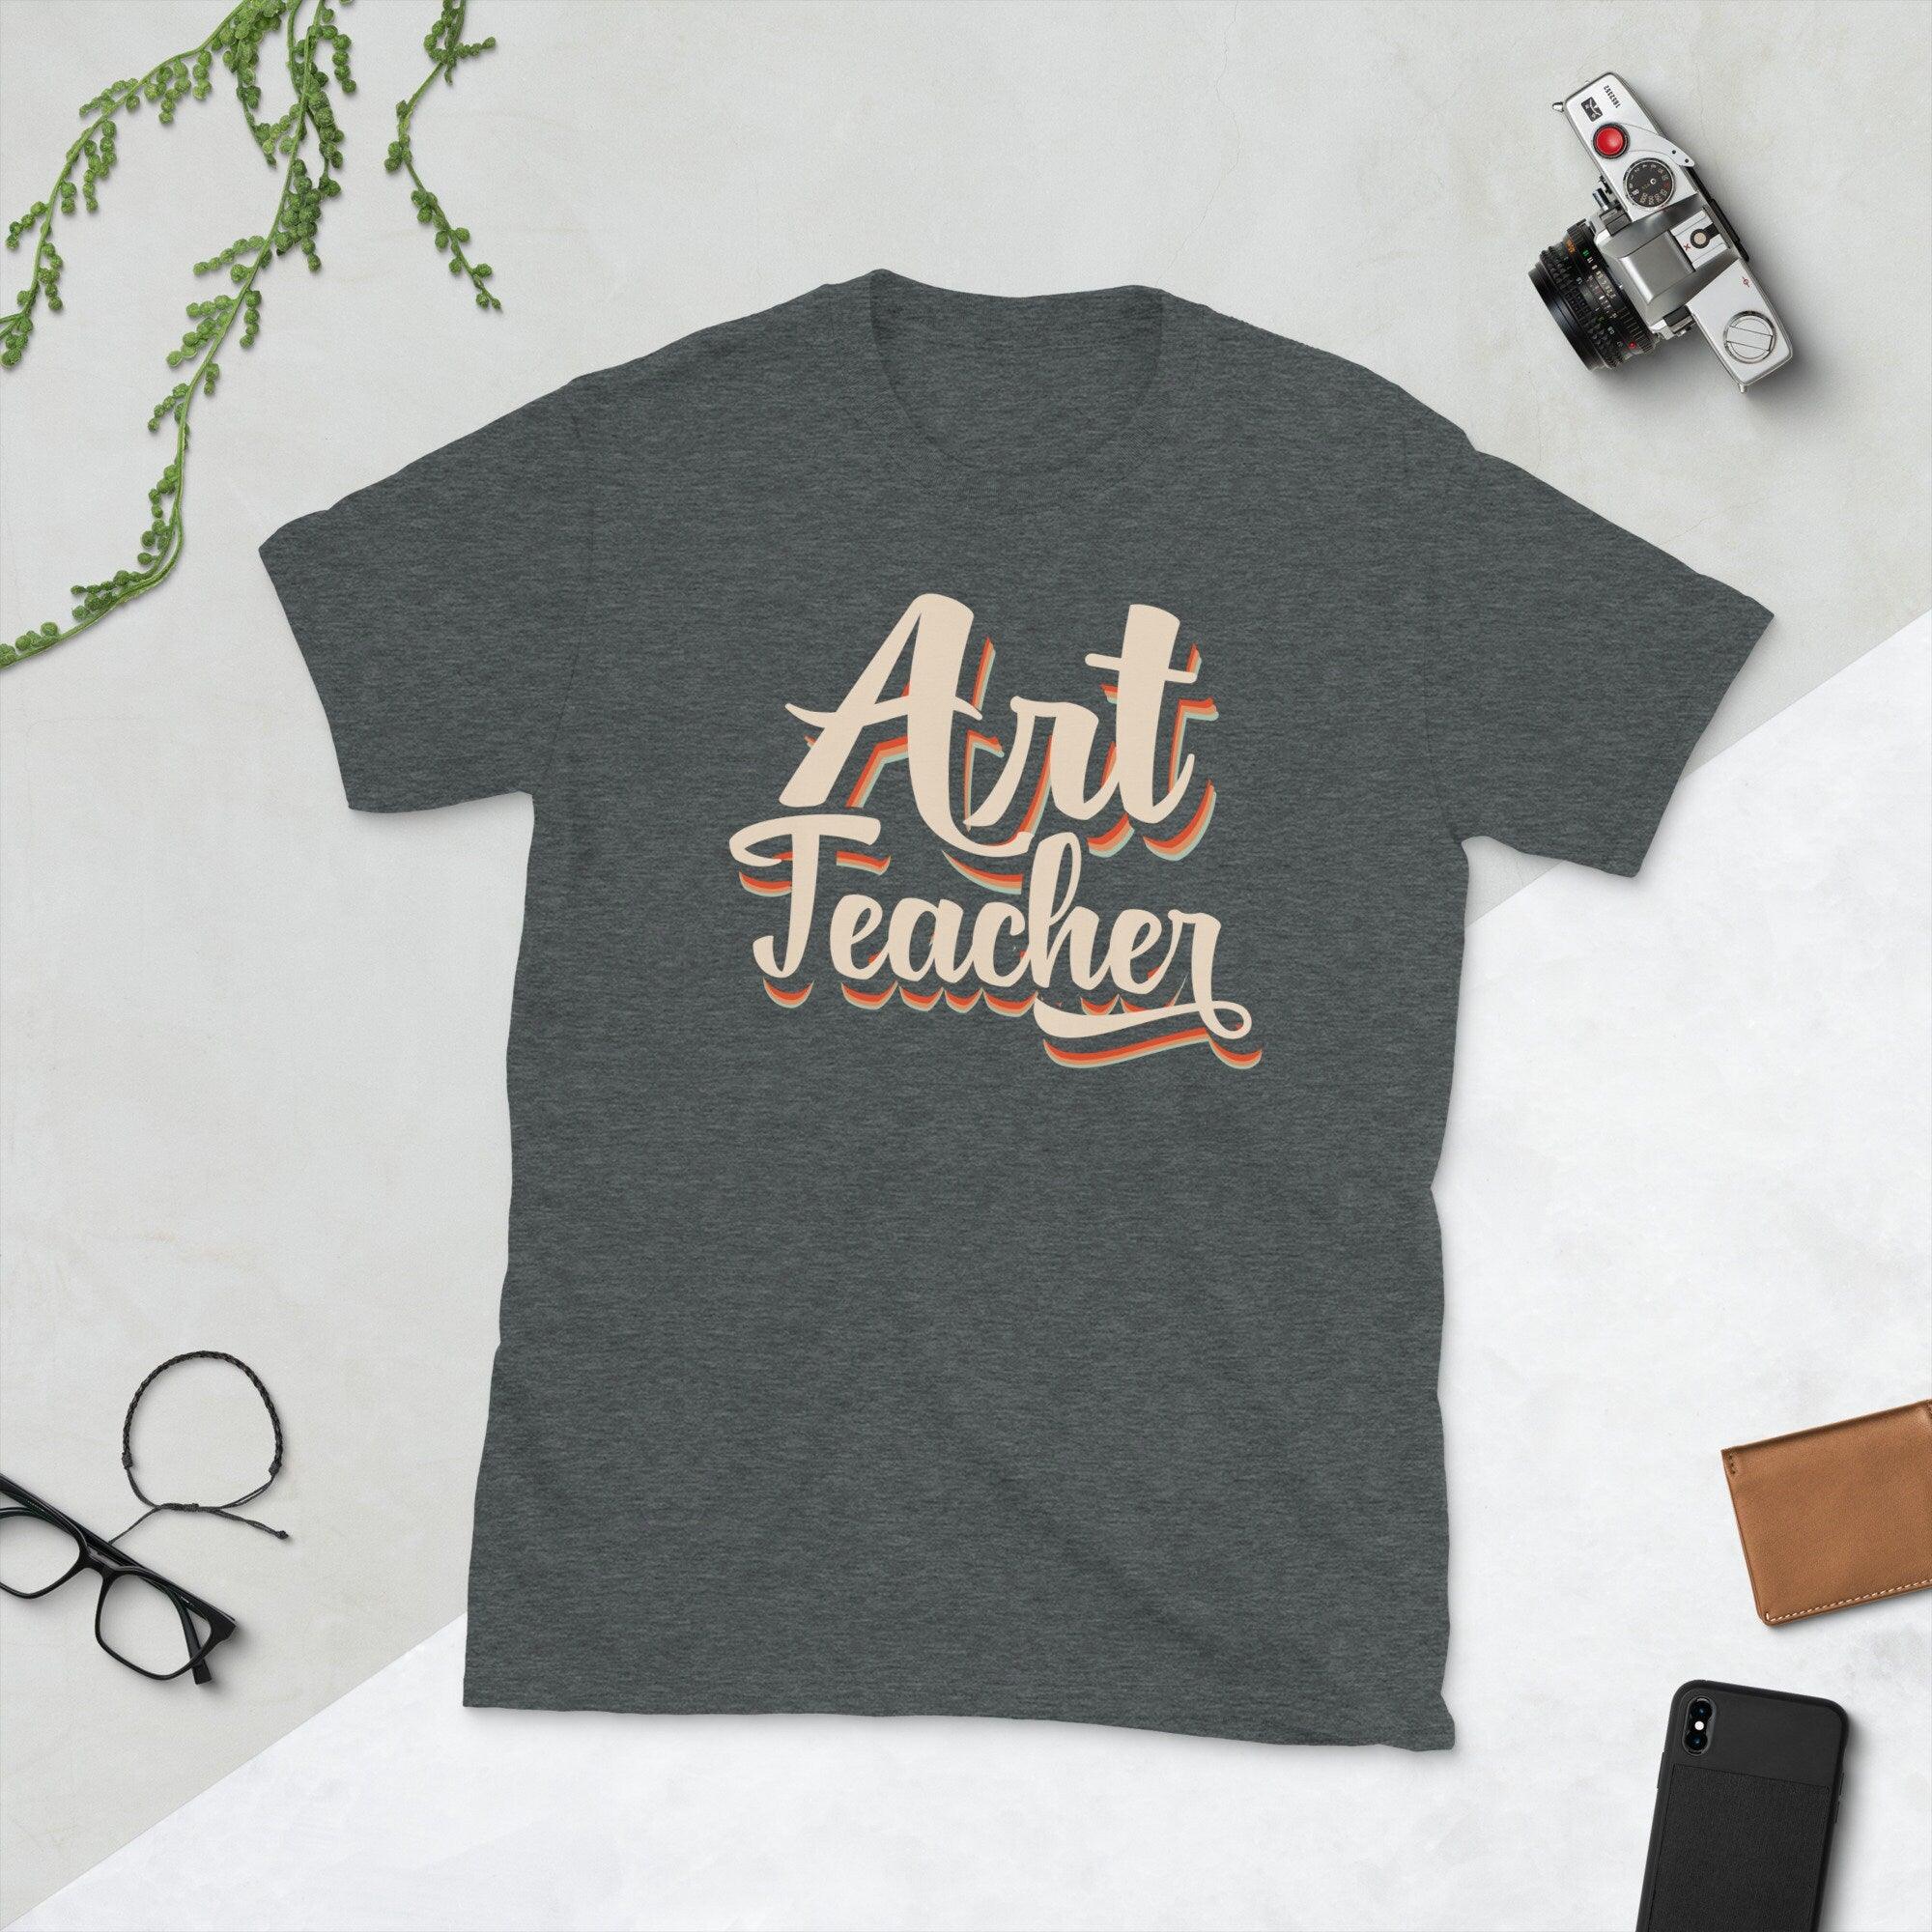 Πουκάμισα δασκάλων τέχνης Γυναικεία Αστεία Tshirt Teacher Life Casual Teachers Apreciation Gift Tee Tops πουκάμισο εραστής τέχνης, δώρο μαθητή τέχνης, δάσκαλος τέχνης, δώρο δασκάλου τέχνης, δώρα δασκάλου τέχνης, πουκάμισο δασκάλου τέχνης, δώρο καλλιτέχνη, πουκάμισο καλλιτέχνη, μπλουζάκι καλλιτέχνη, δώρο για δάσκαλο τέχνης , δώρο για δάσκαλο, εκτίμηση δασκάλου, δώρο δασκάλου, Μπλουζάκι, μπλουζάκια - plusminusco.com